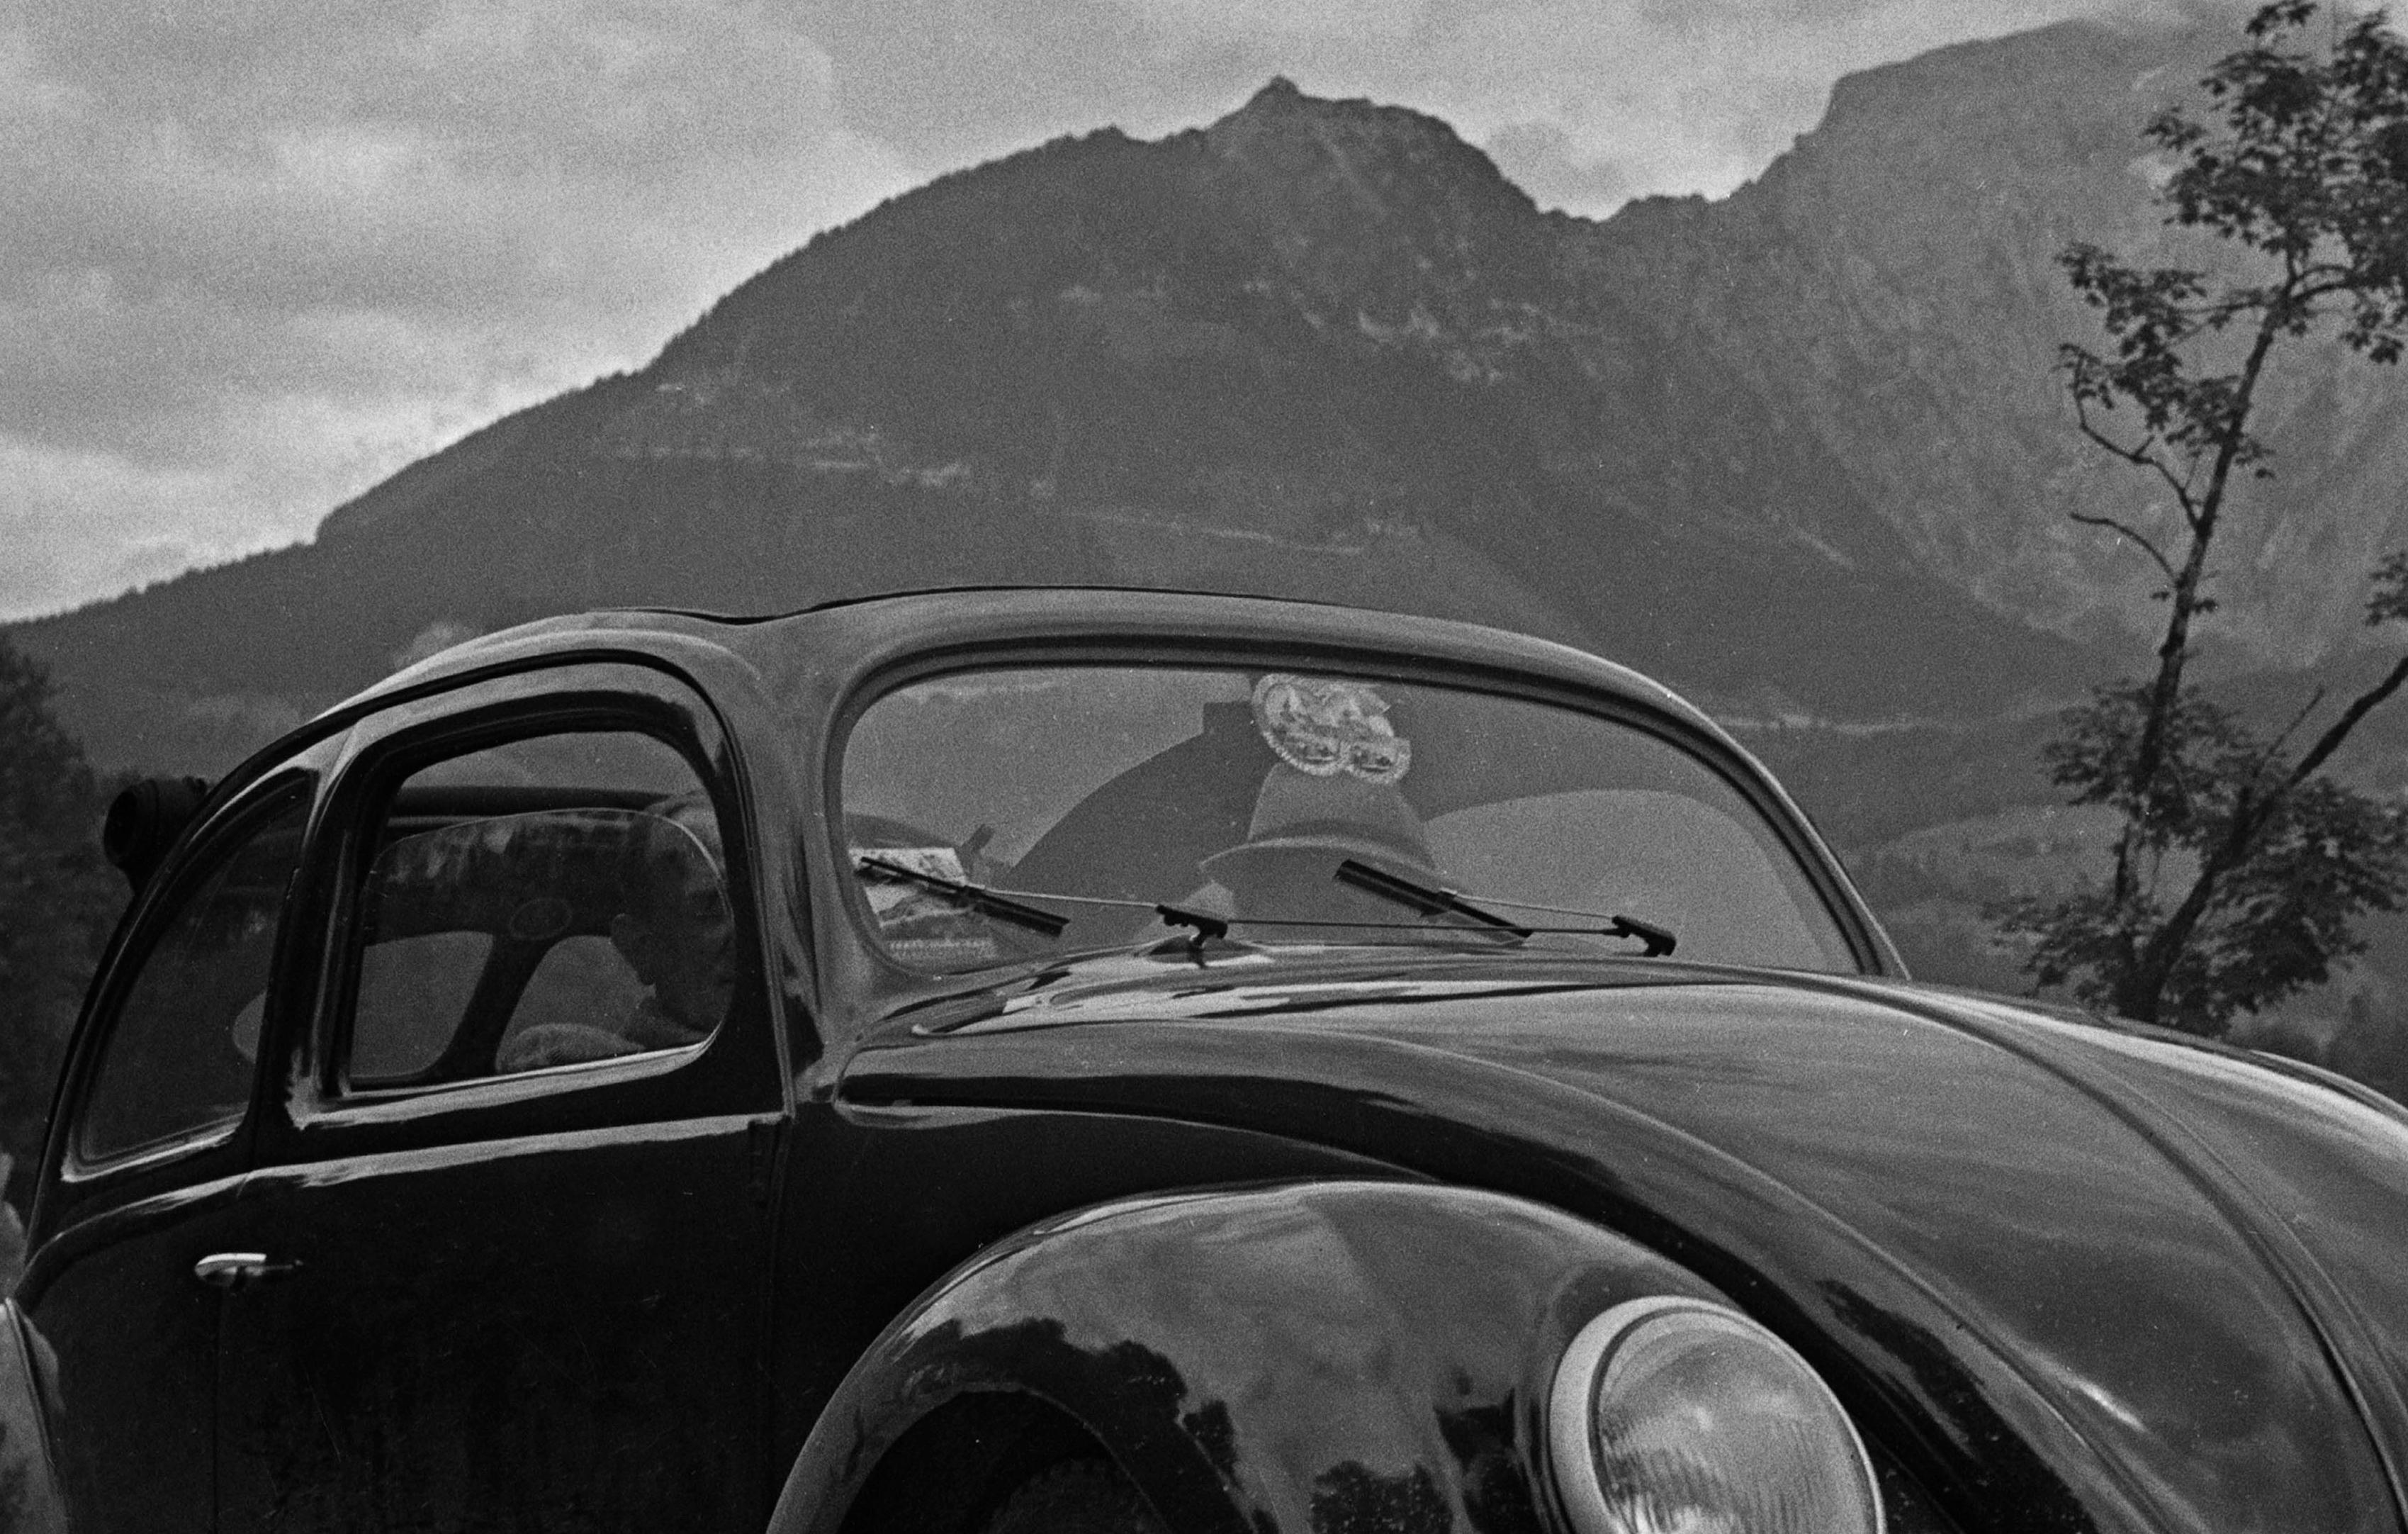 Parking Volkswagen en forme de scarabée près de montagnes, Allemagne, 1939 Imprimé plus tard  - Photograph de Karl Heinrich Lämmel